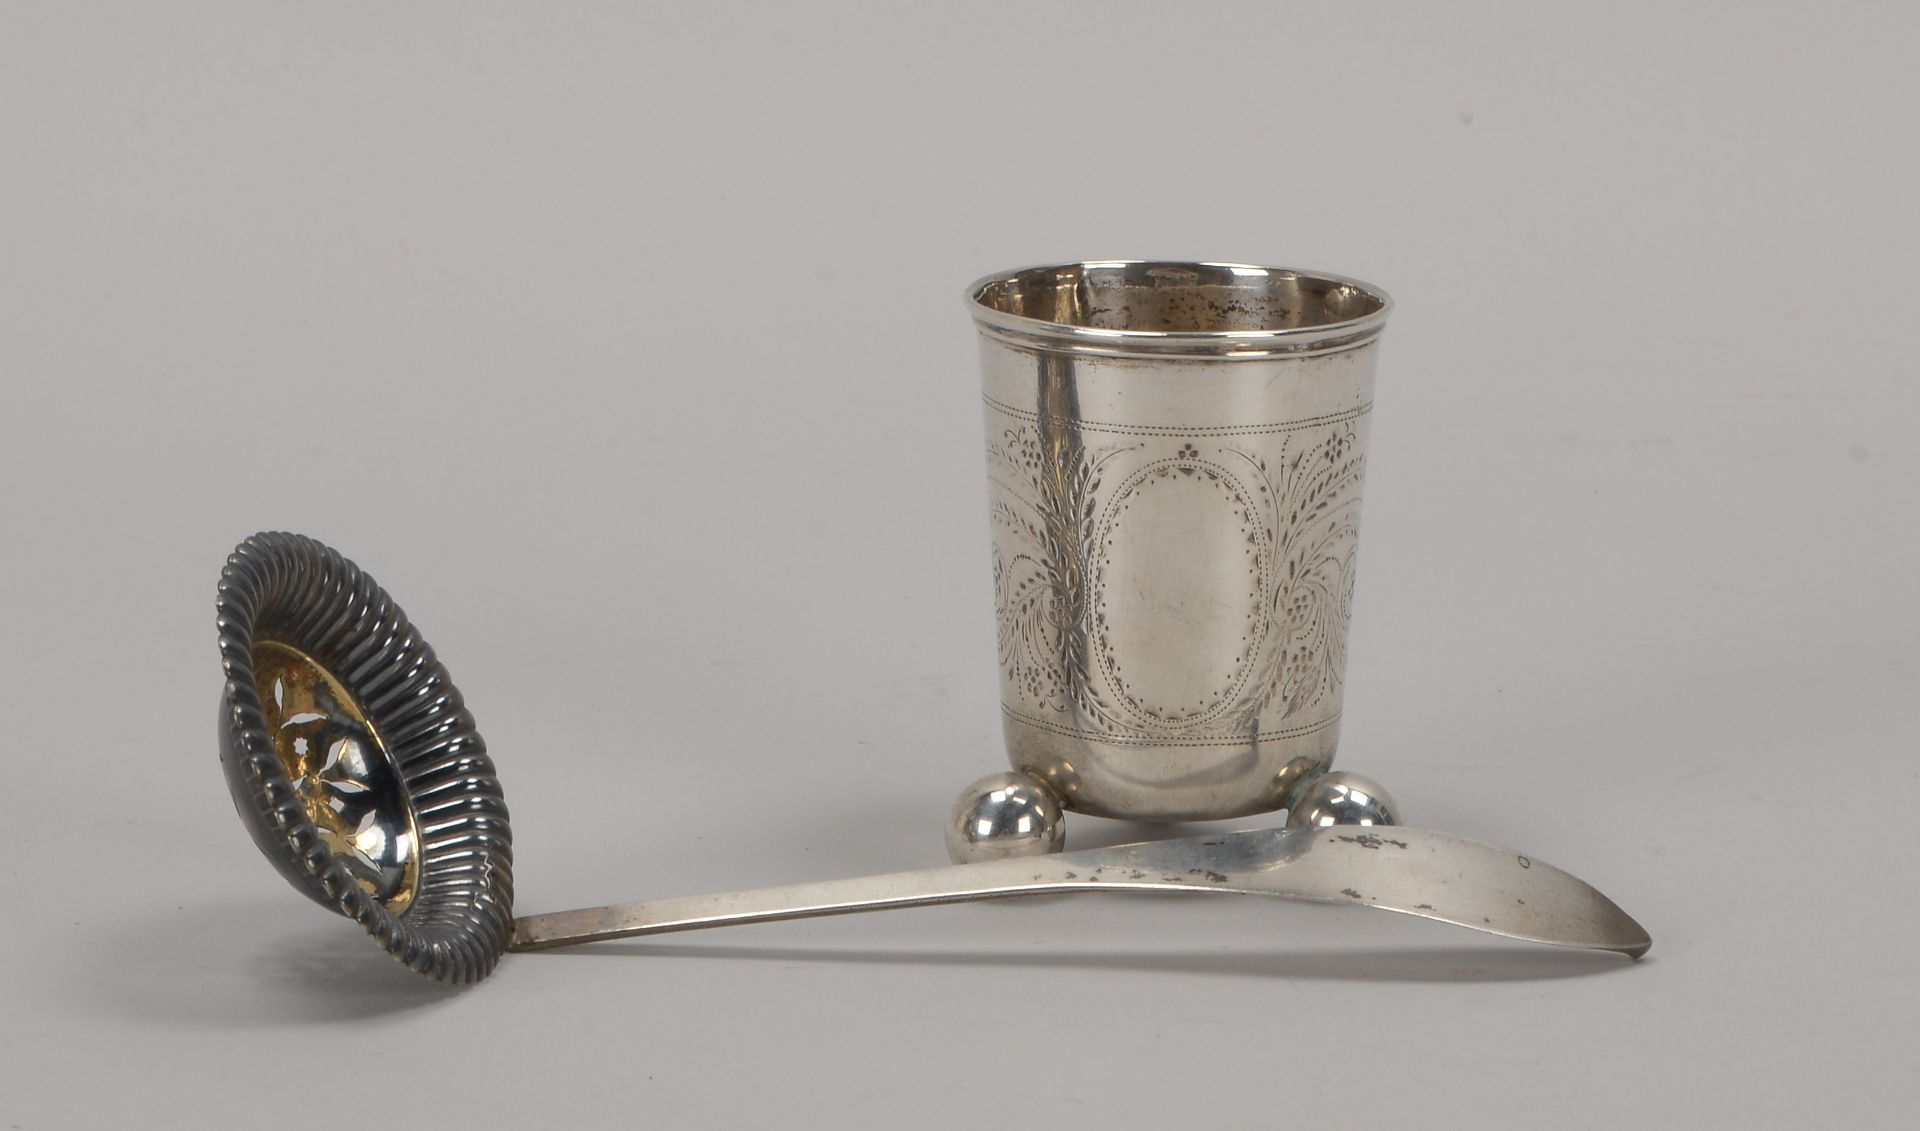 2 Silberteile: Kugelfu&szlig;becher (um 1830), ziseliert, mehrfach punziert, H&ouml;he 7,7 cm; dazu